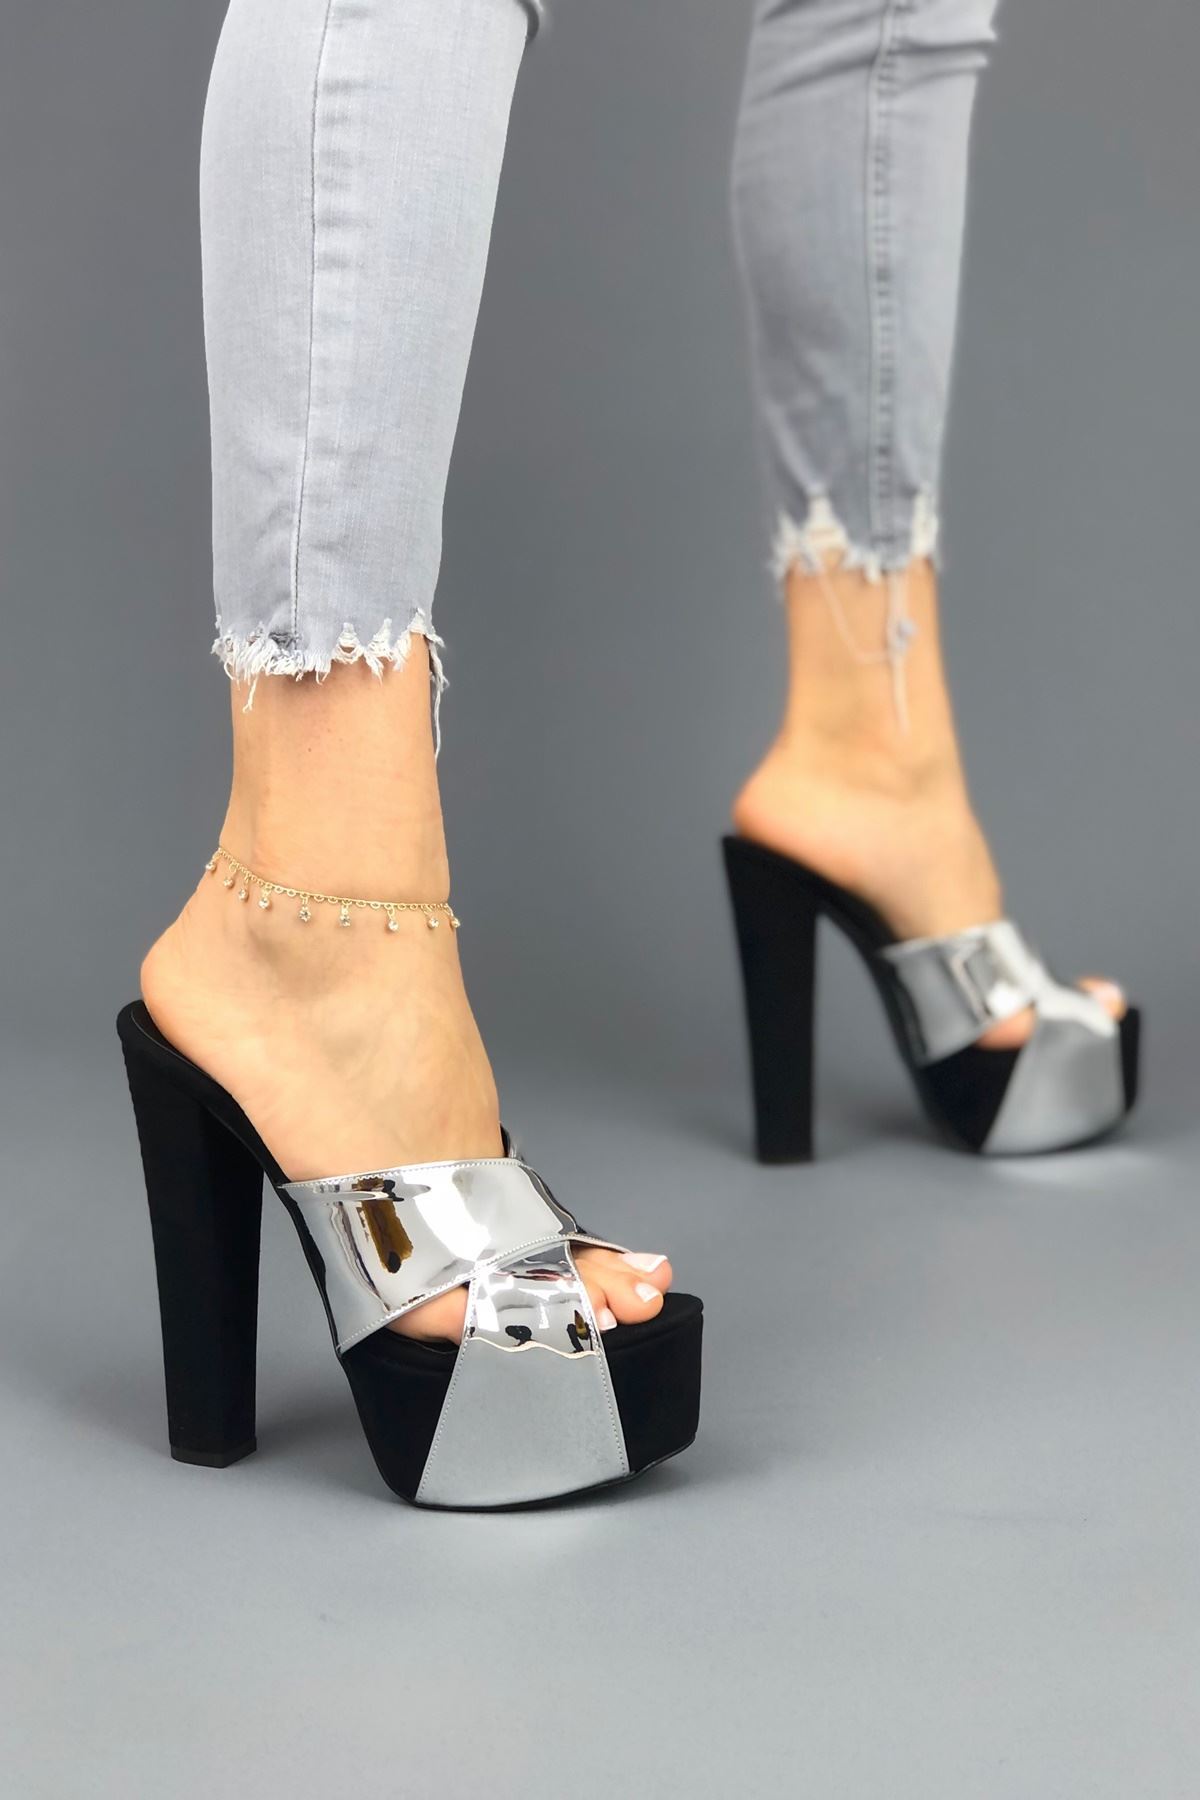 Mulan Siyah - Gümüş parlak Kadın Yüksek Topuklu Ayakkabı